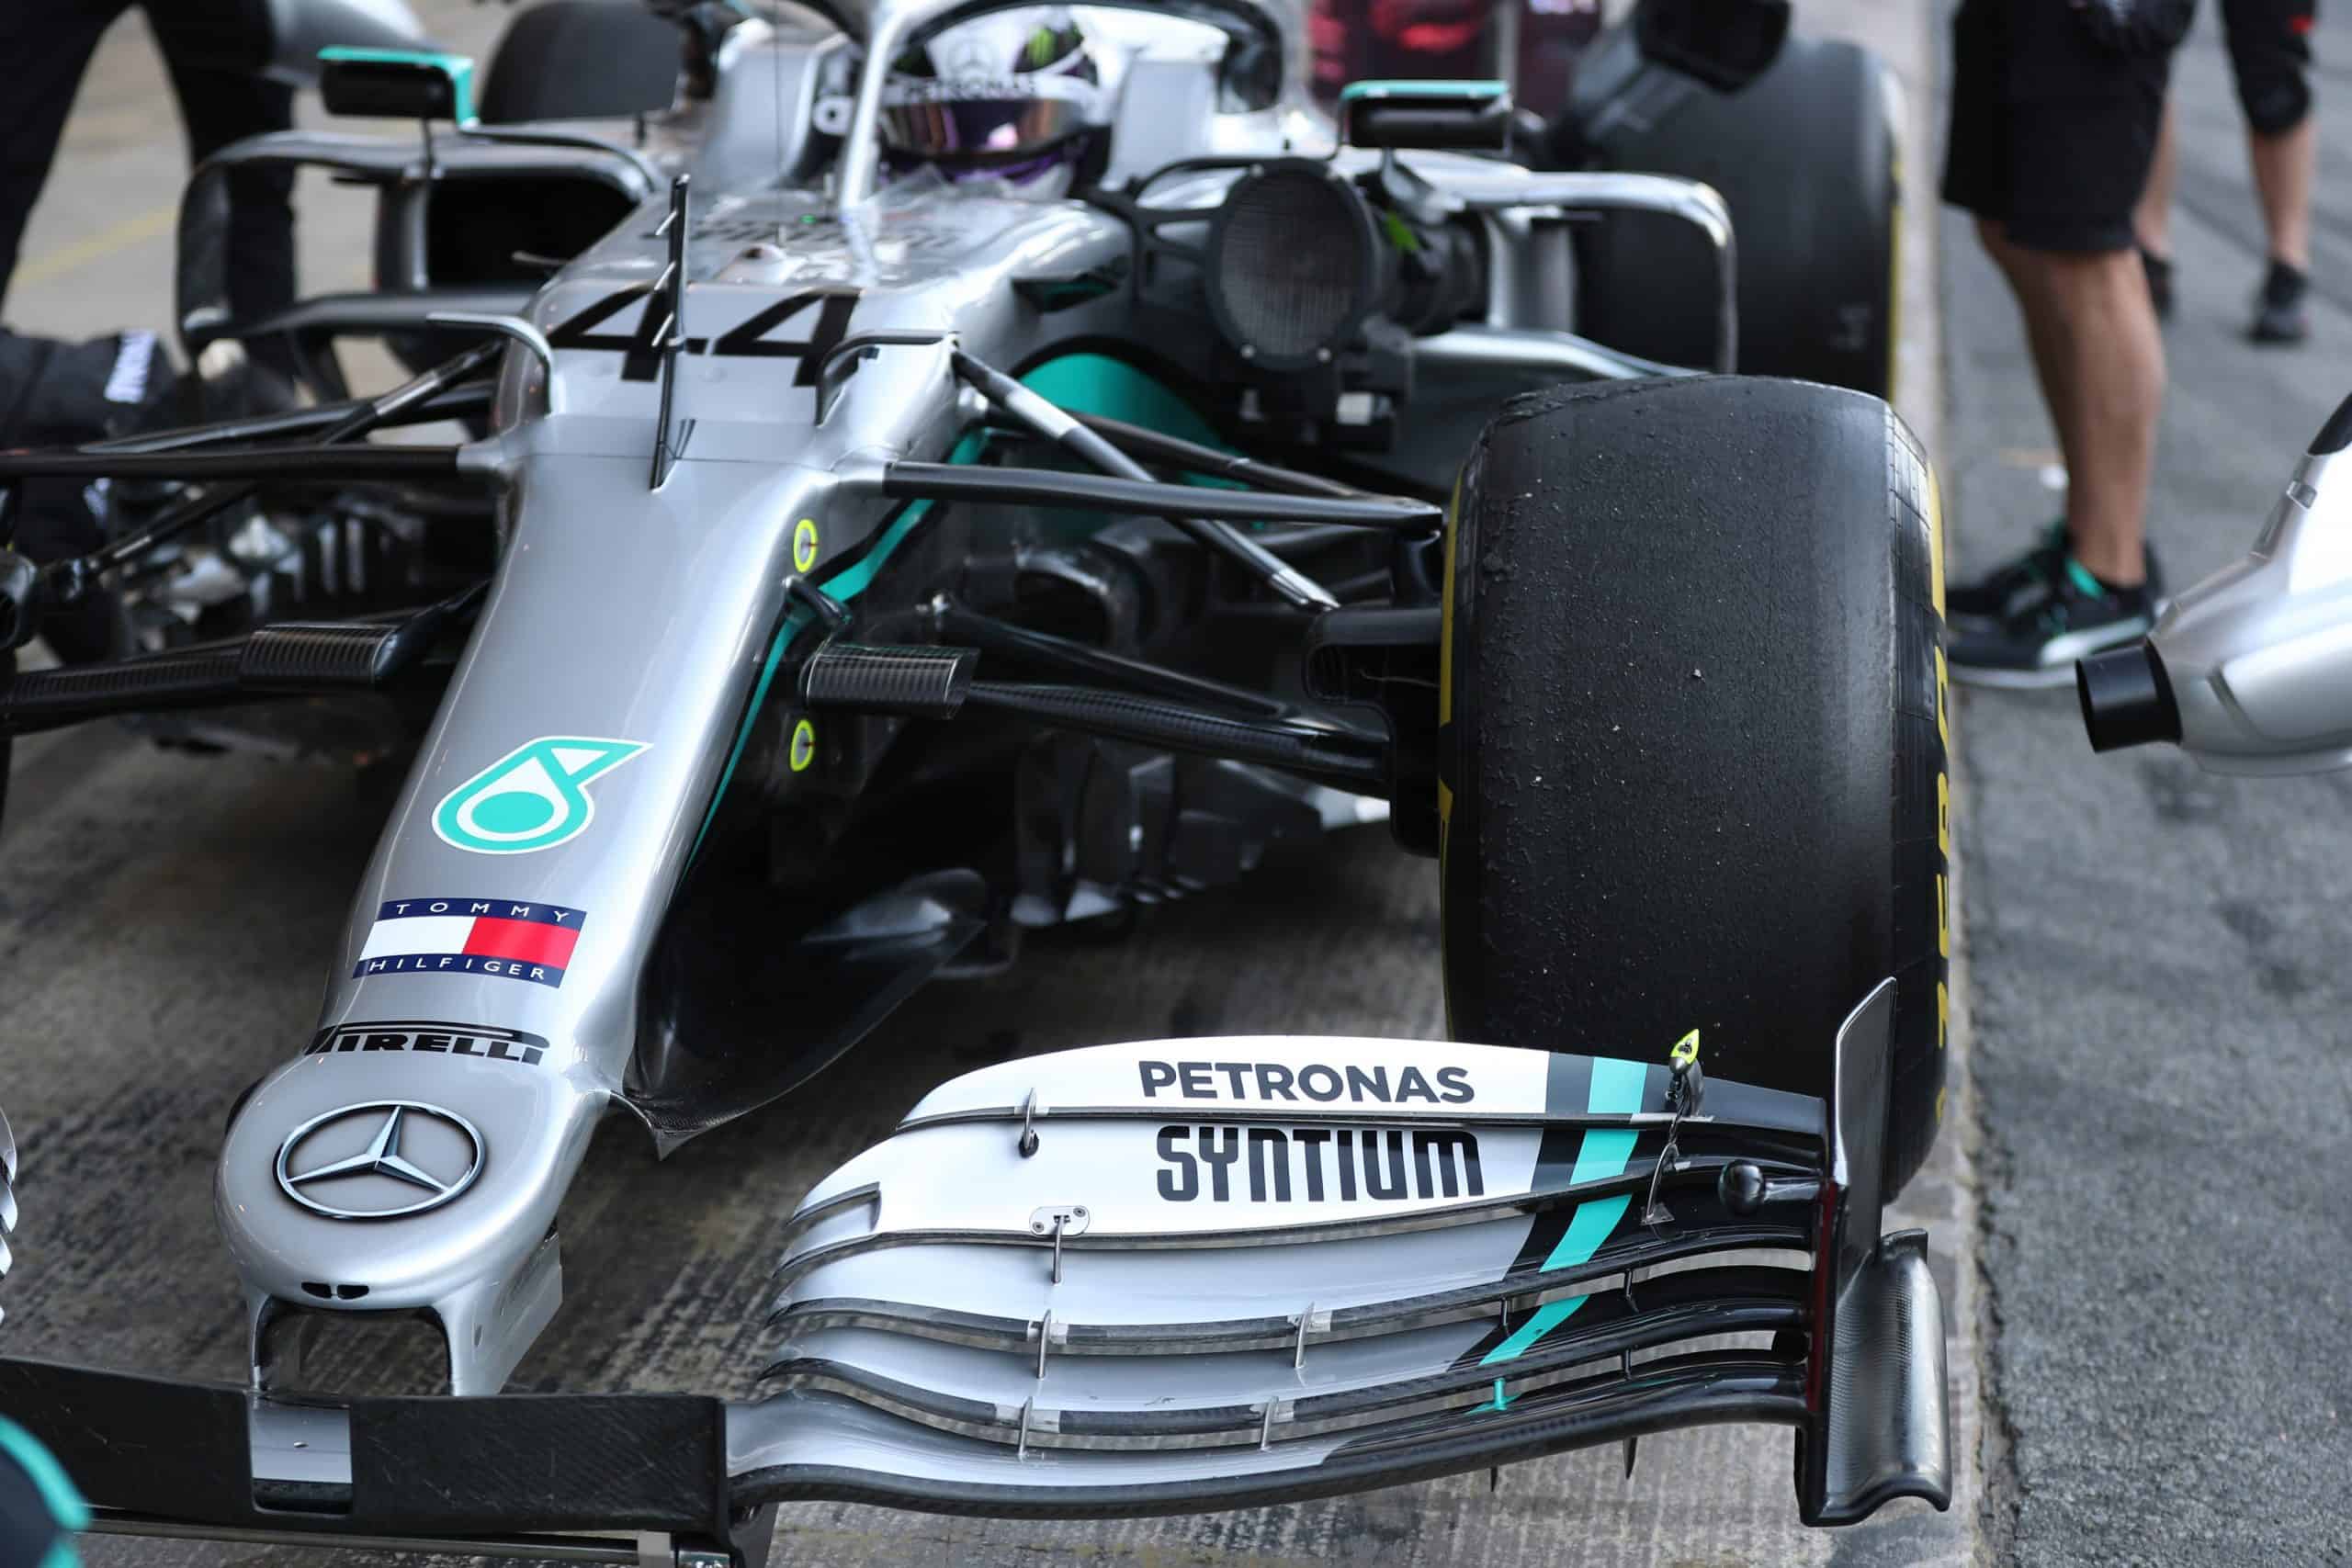 Formula 1: Sistem stereng baharu Mercedes dilarang mulai 2021